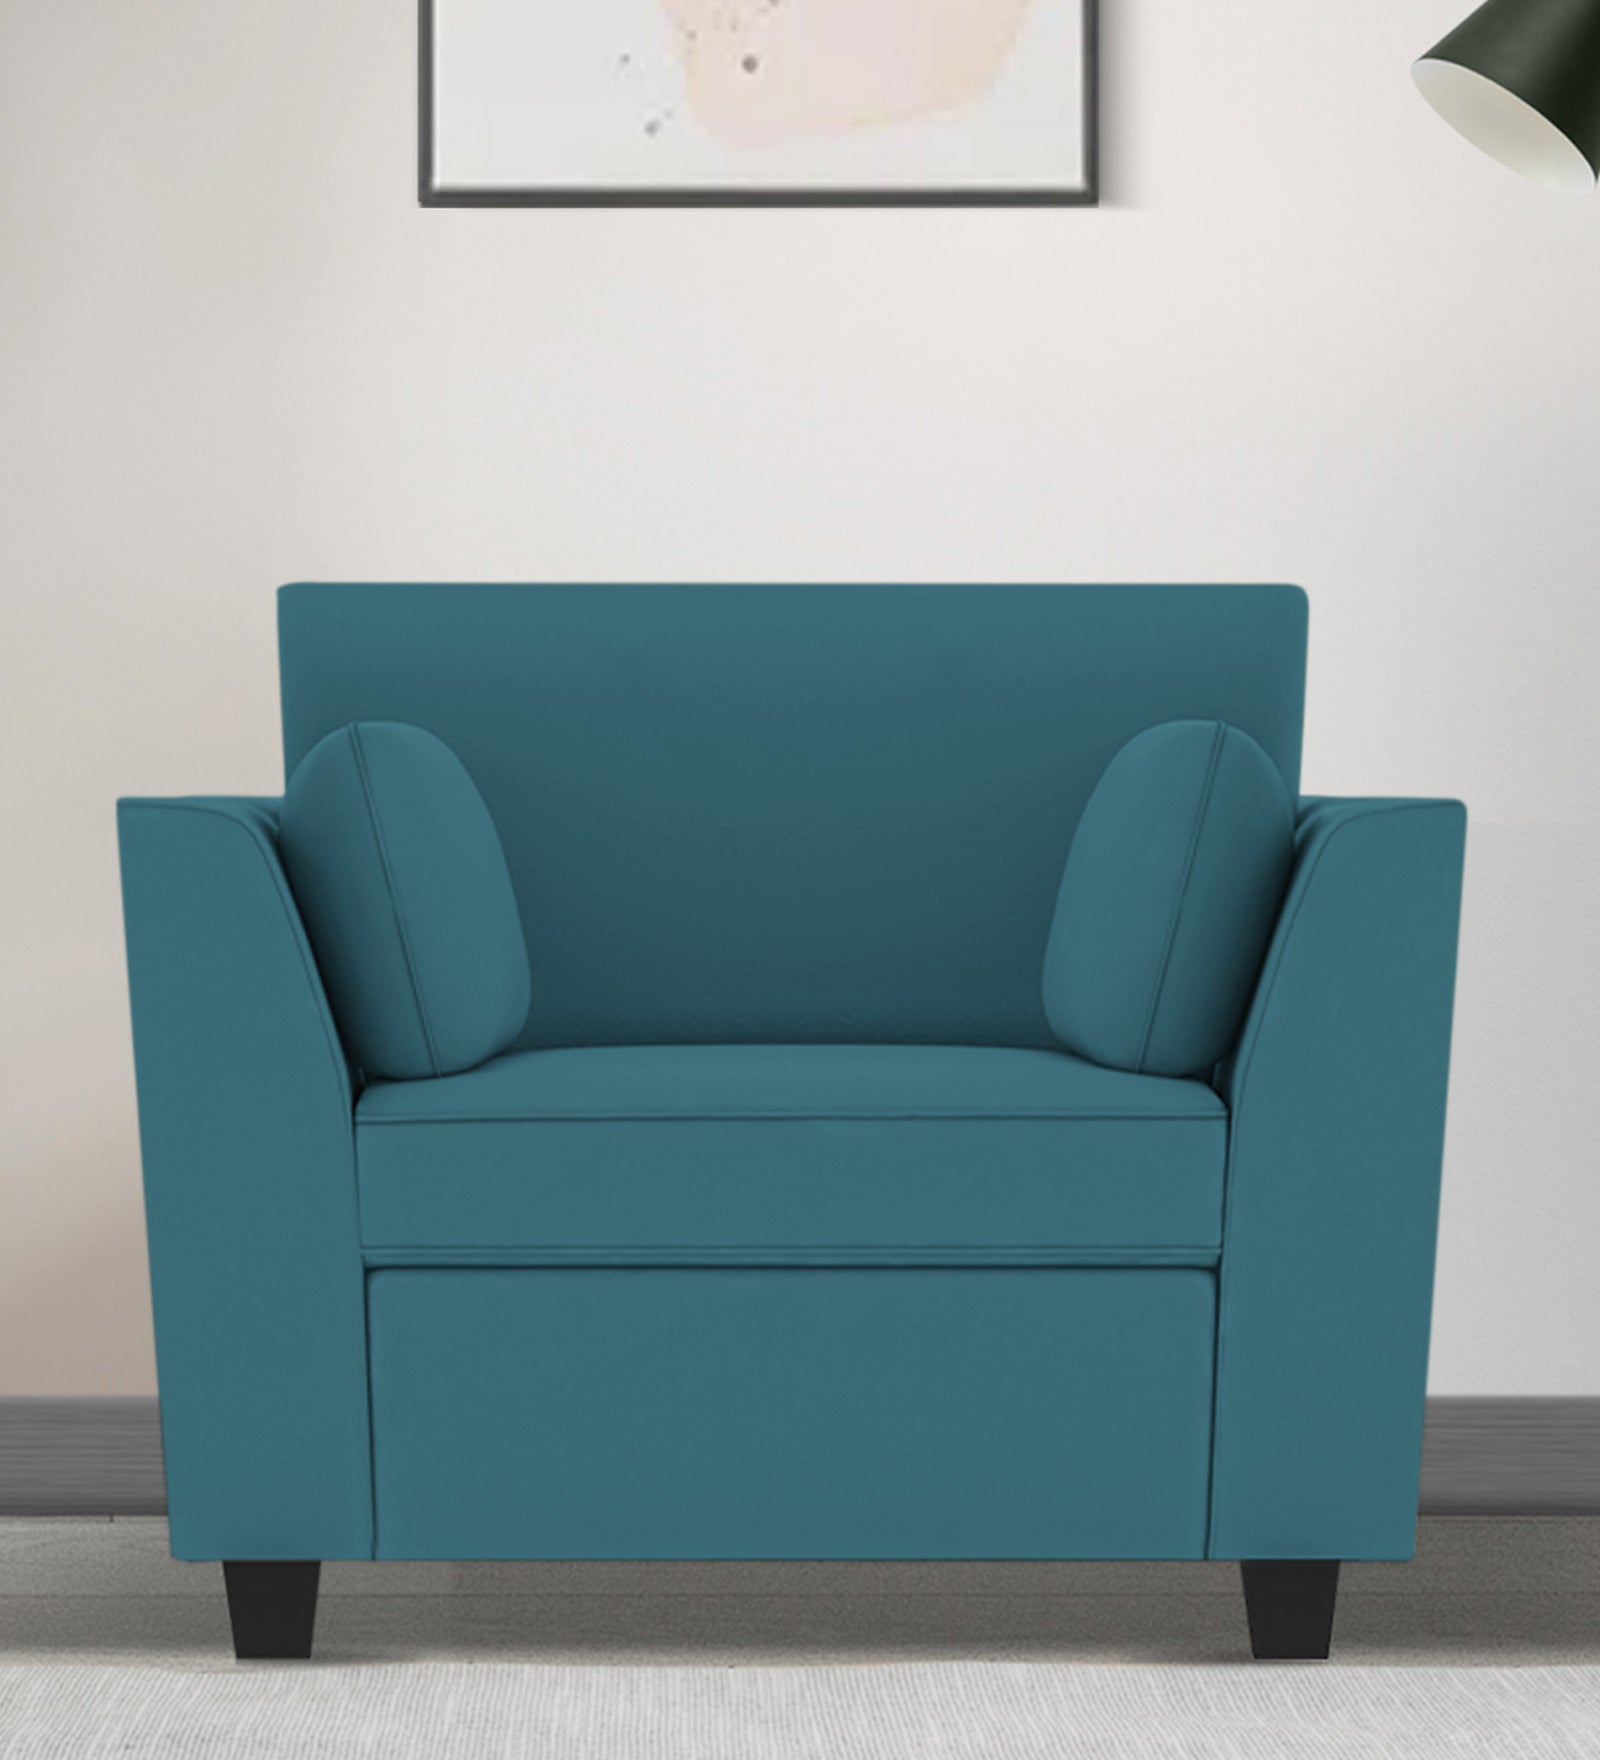 Bristo Velvet 1 Seater Sofa in Aqua Blue Colour With Storage